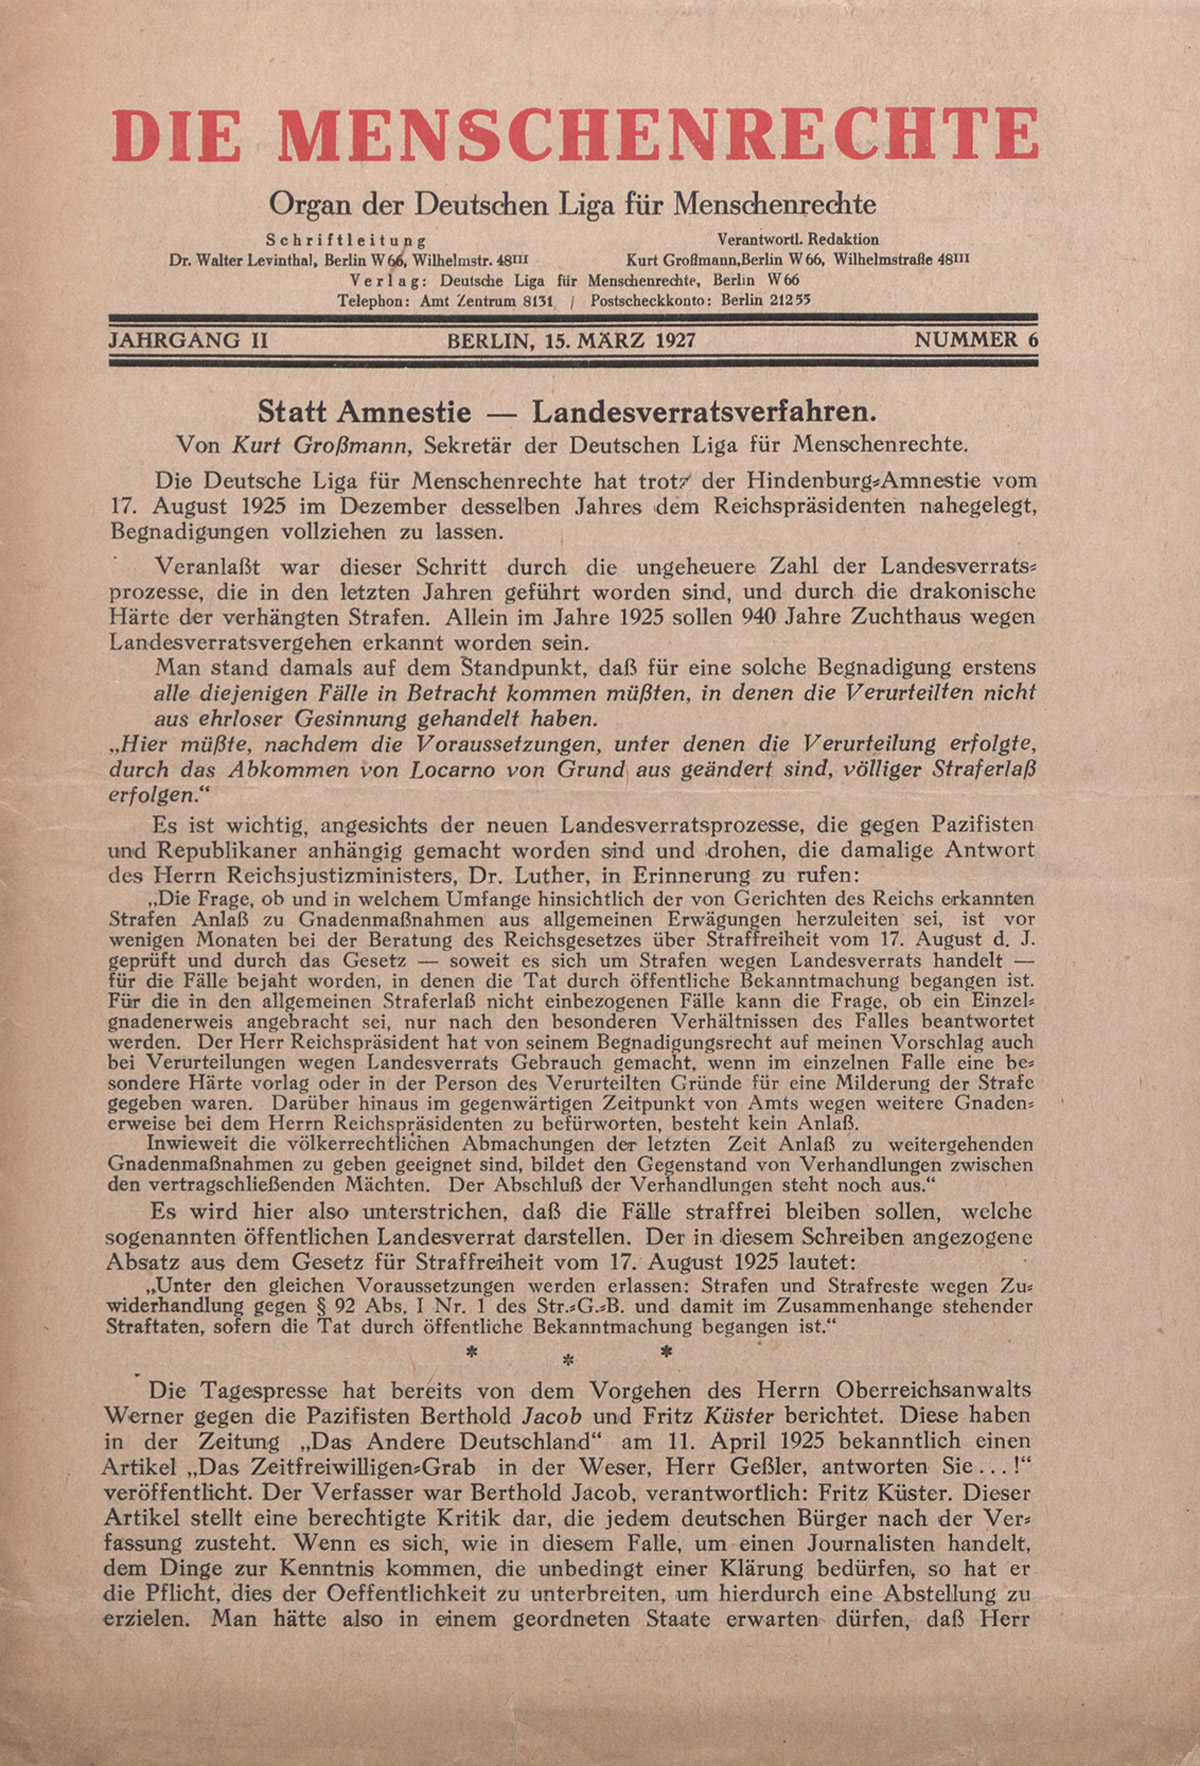 Die Menschenrechte (Les droits de l'homme),organe de la Ligue allemande des droits de l'Homme, 15 mars 1927